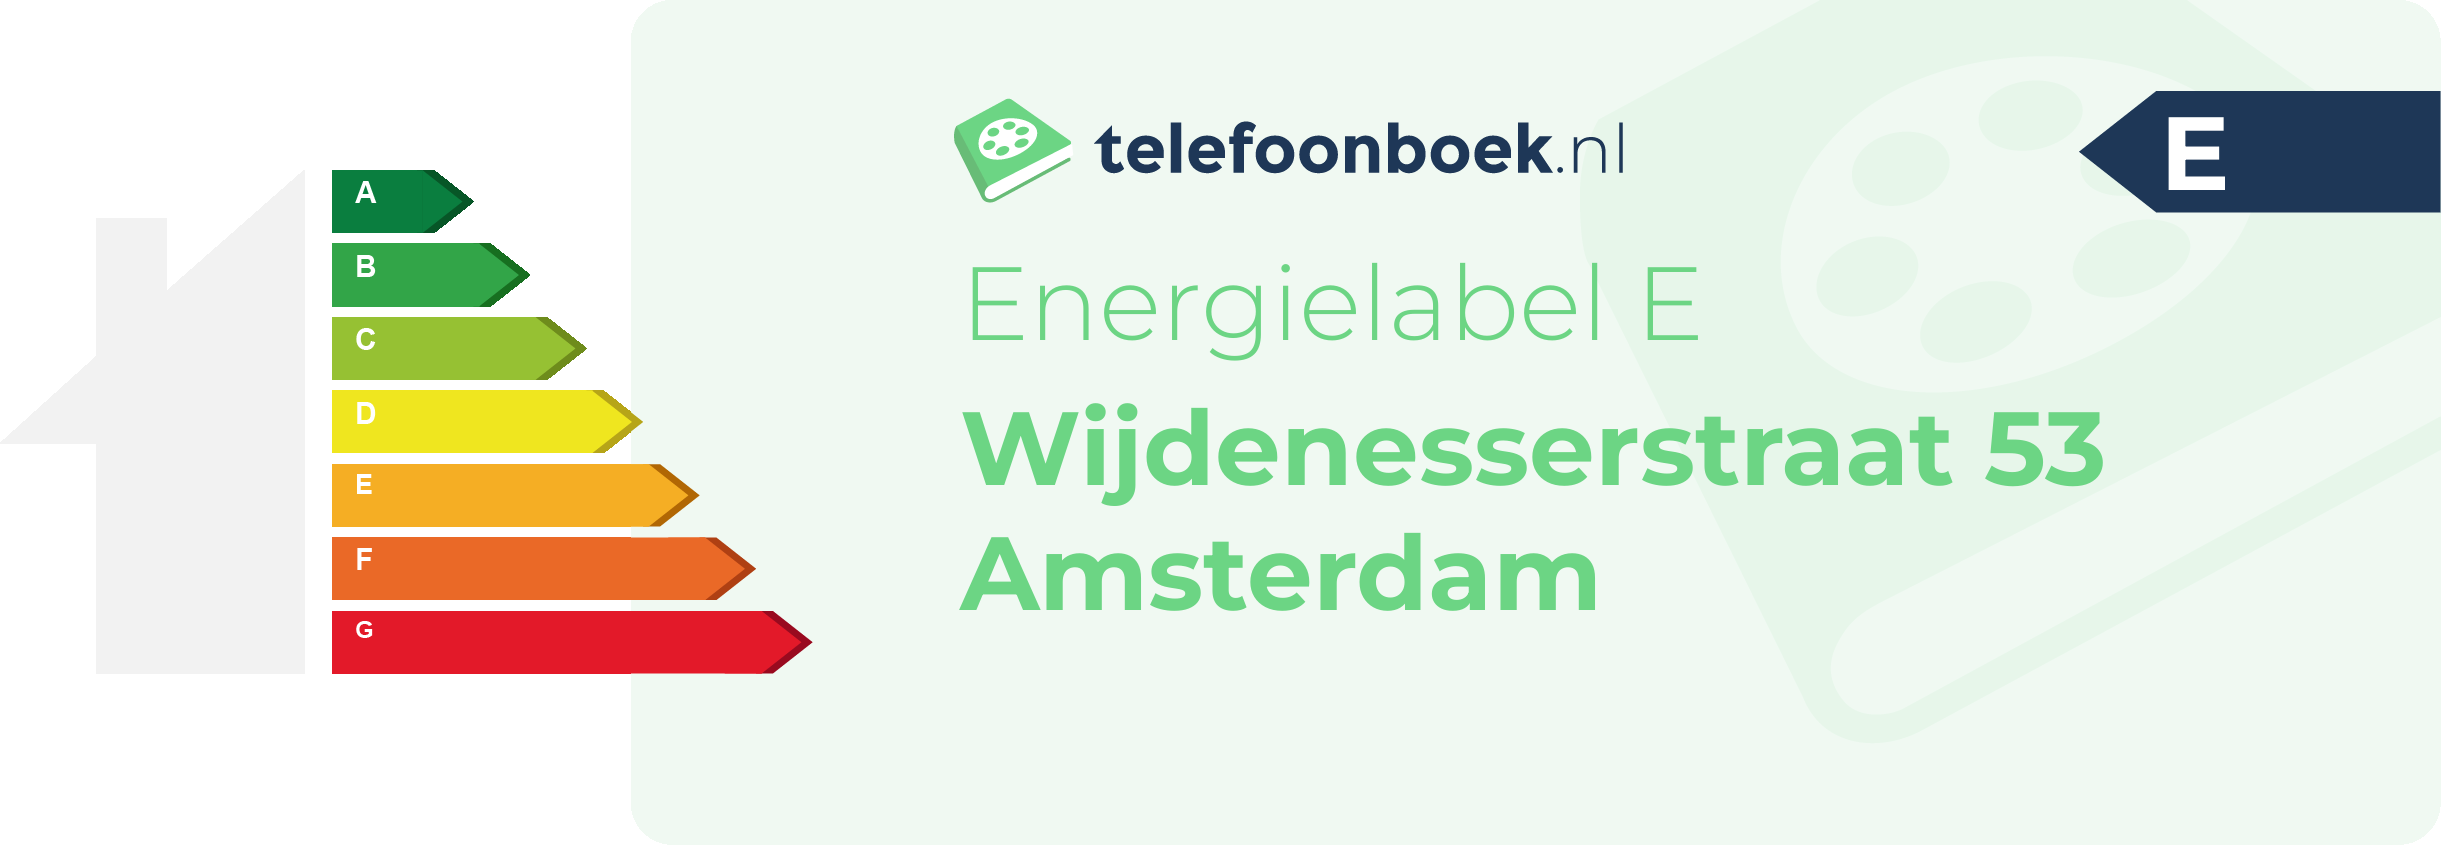 Energielabel Wijdenesserstraat 53 Amsterdam